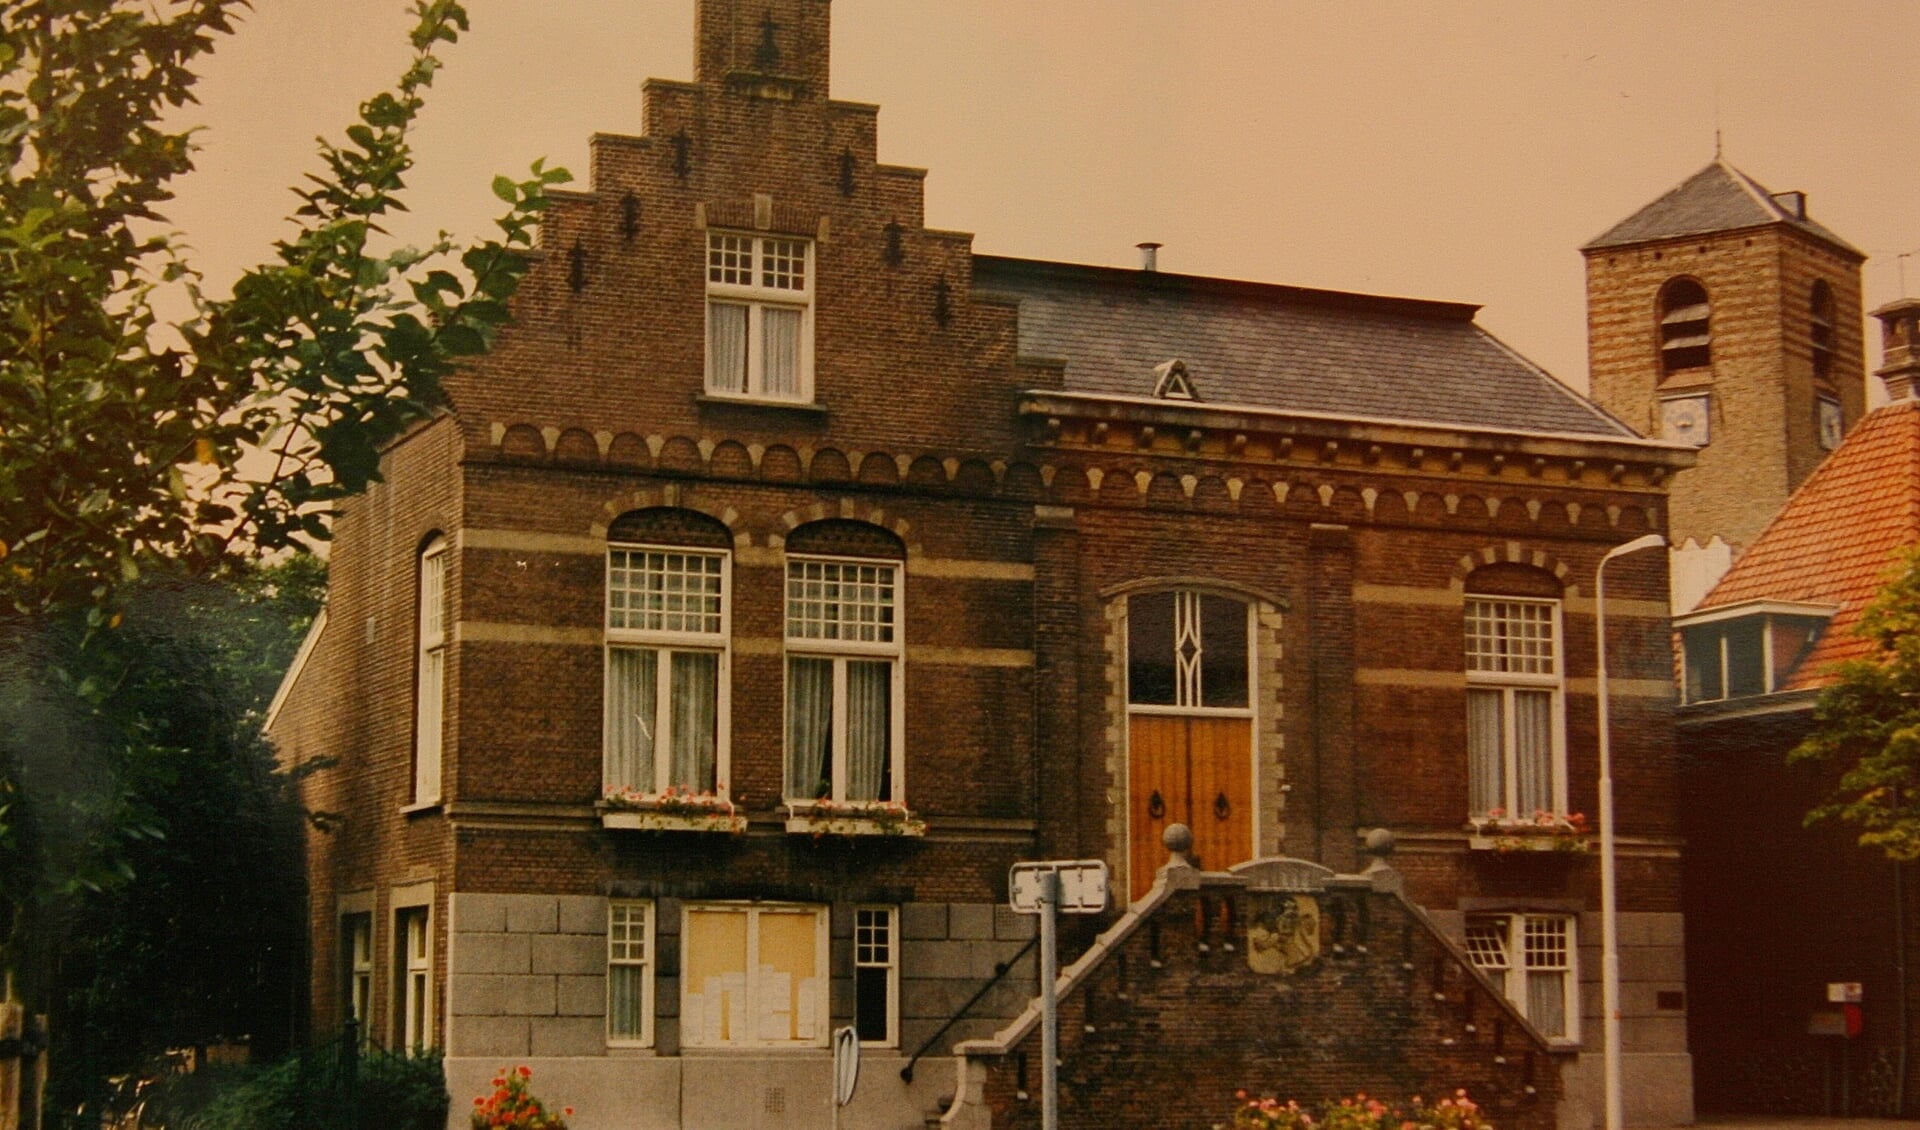 Het voormalige gemeentehuis werd in de jaren 80 van de vorige eeuw gesloopt.